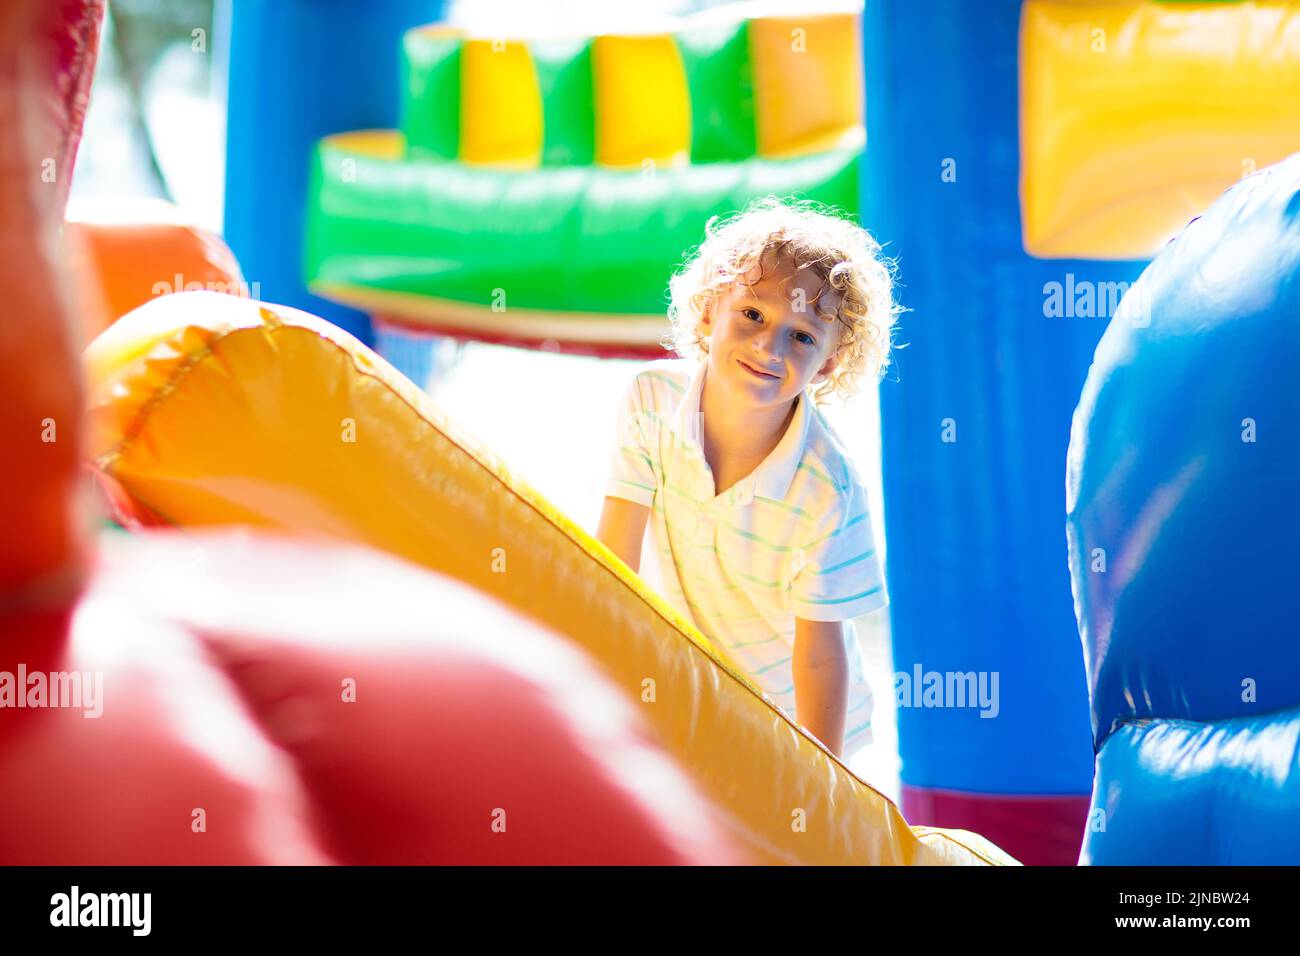 Kinder springen auf buntem Spielplatz-Trampolin. Kinder springen in aufblasbare Sprungburg auf Kindergarten Geburtstagsparty Stockfoto